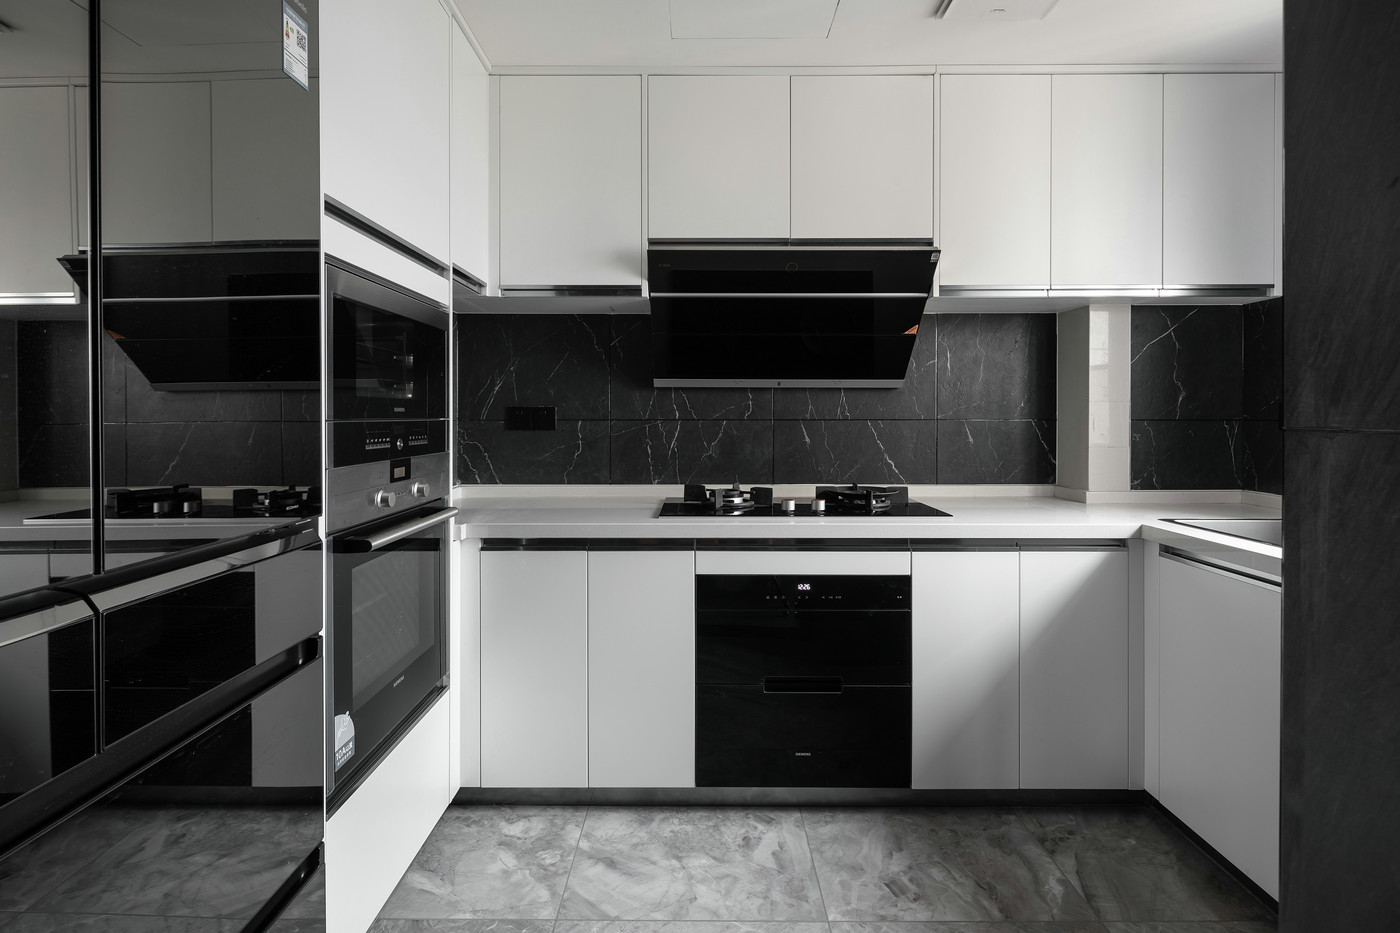 黑白色系的混合与叠加使厨房有更深远的空间感，使空间更加简洁雅致。